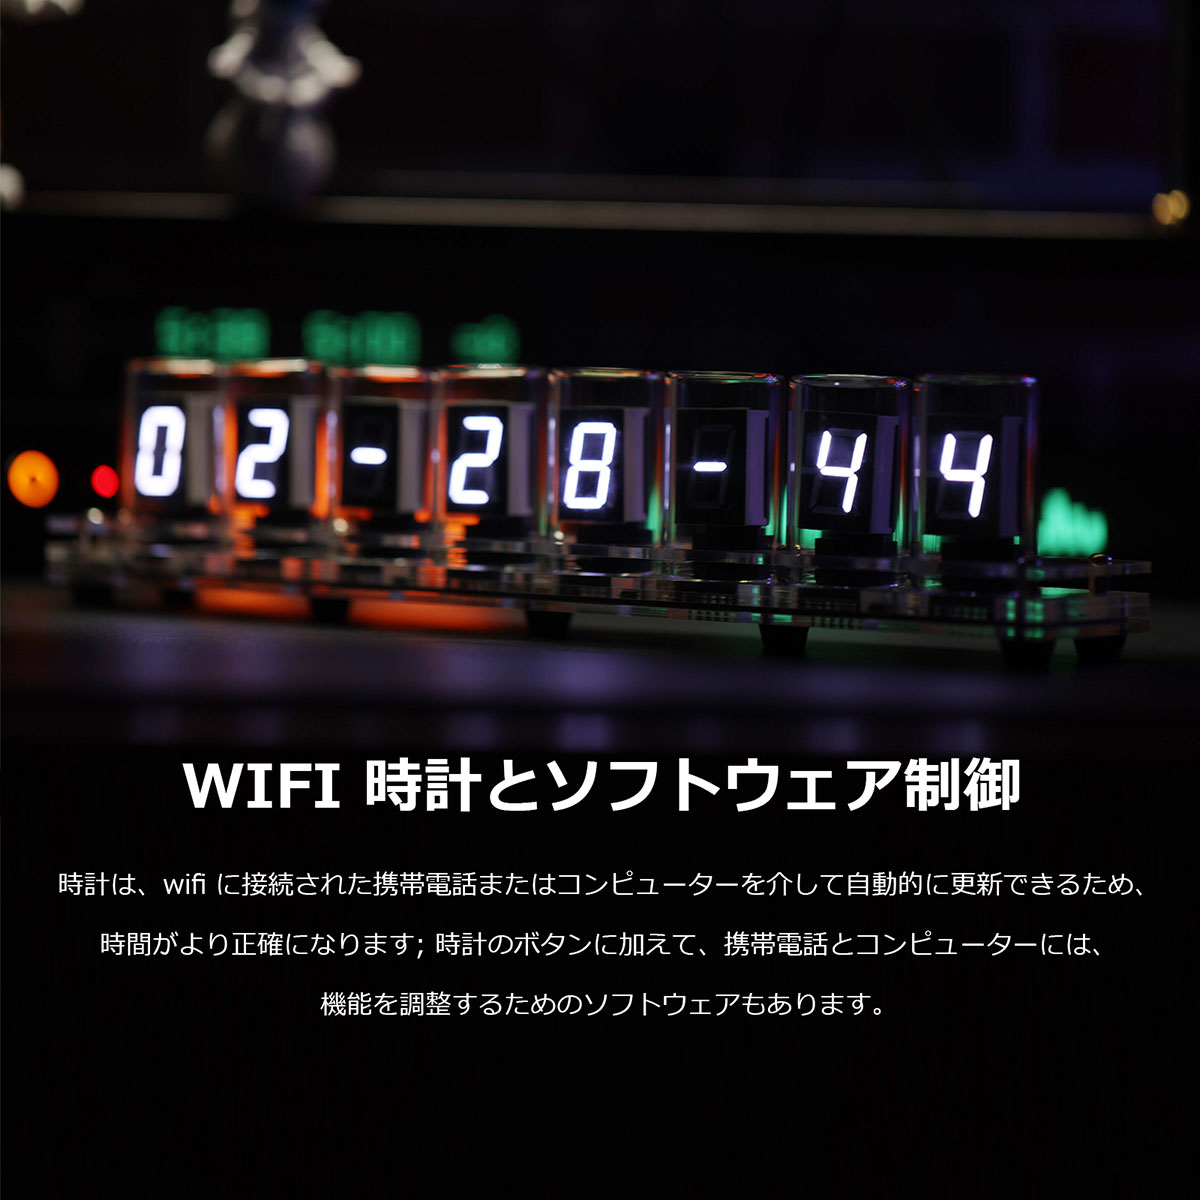 レトロな 8-bit ニキシー管風 時計 12/24 H LED ディスプレイ WIFI 